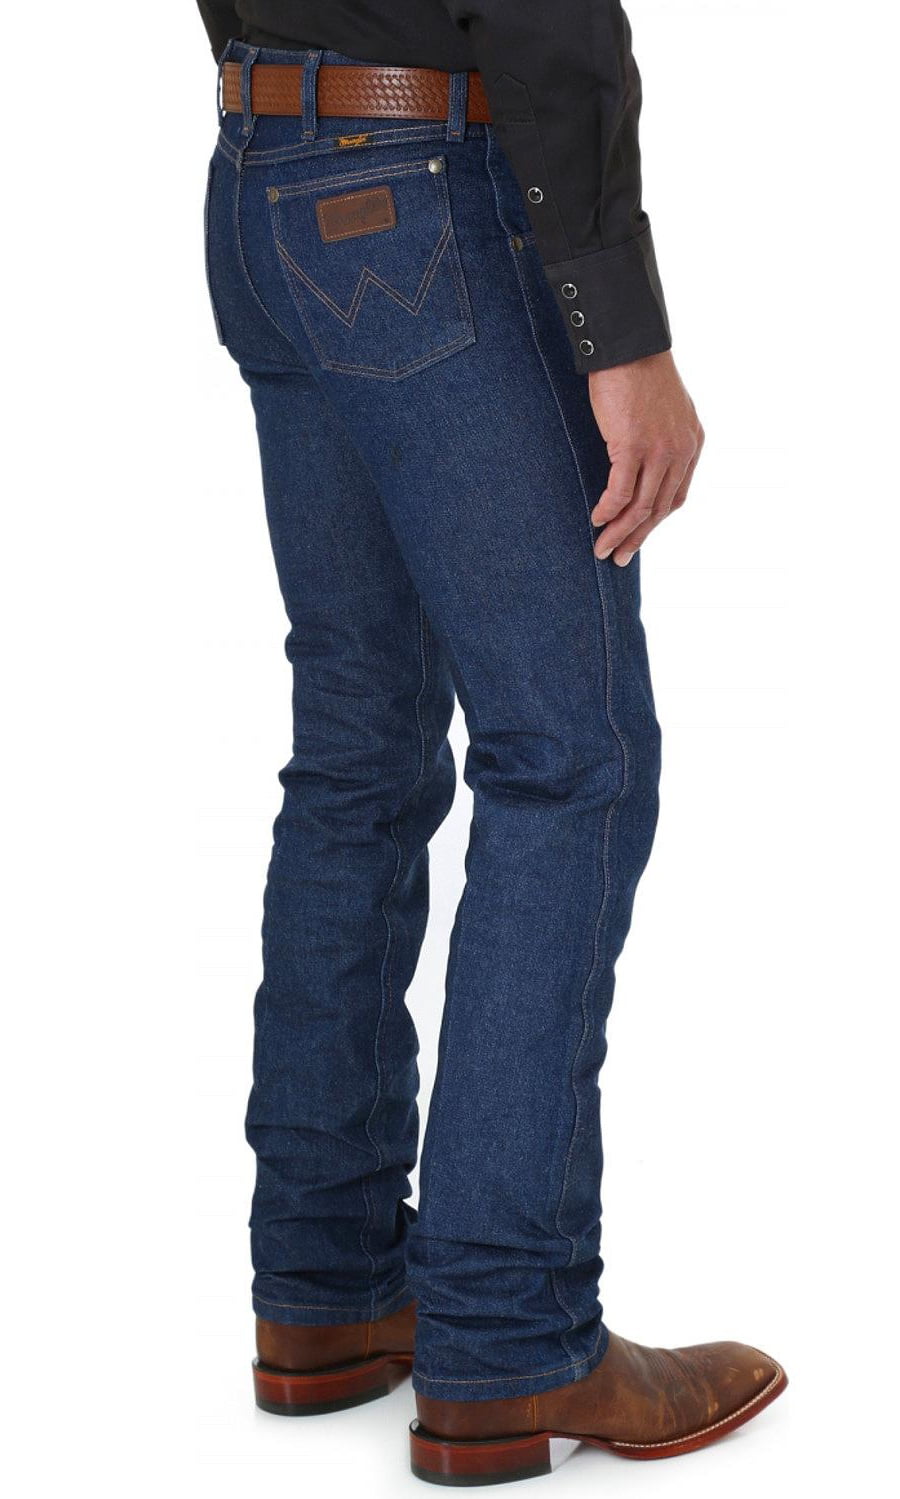 Wrangler Men's Jeans Cowboy Cut 36Mwz 